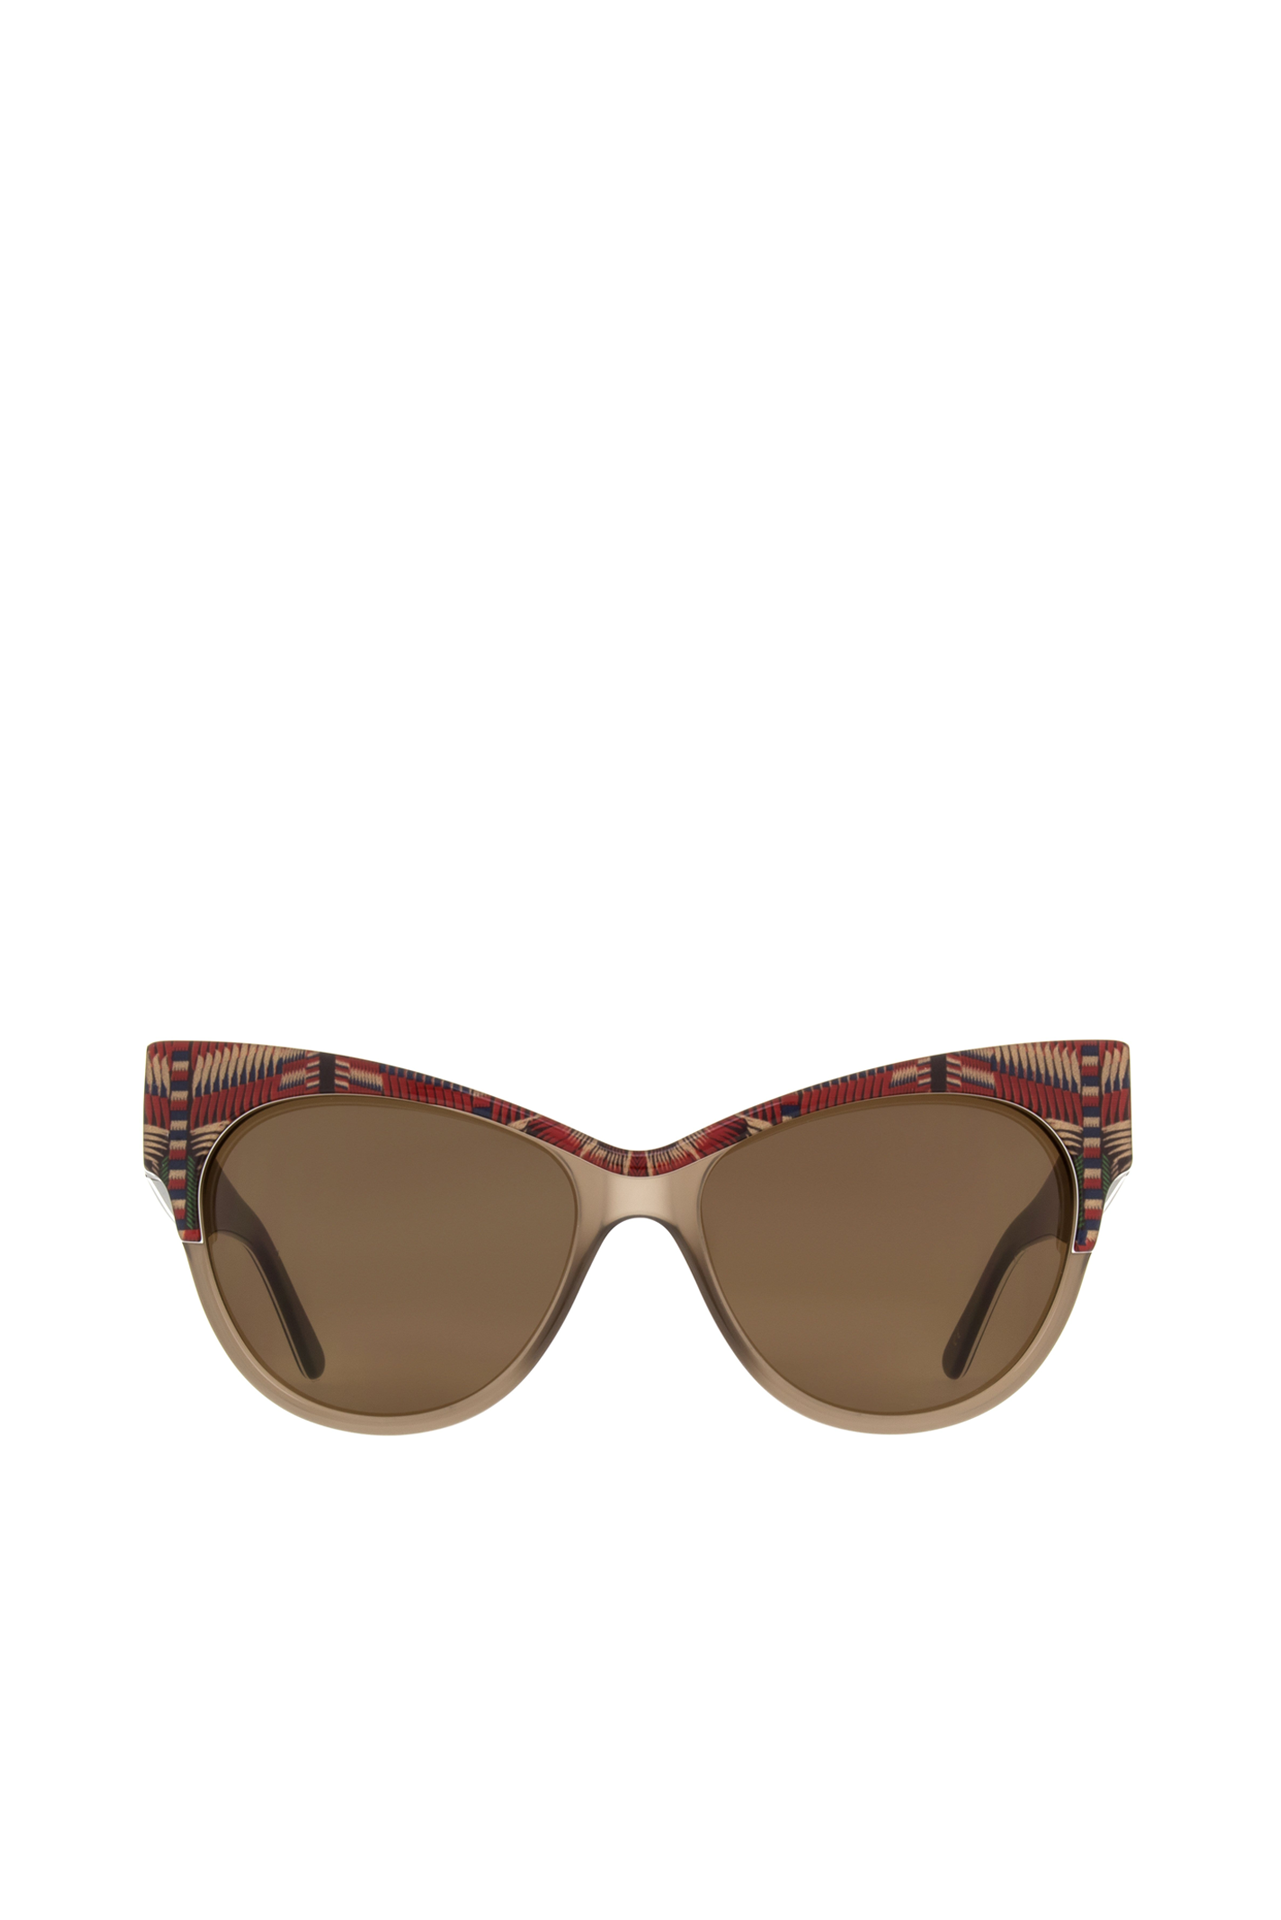 Sunglasses Bolero - Cancan Red